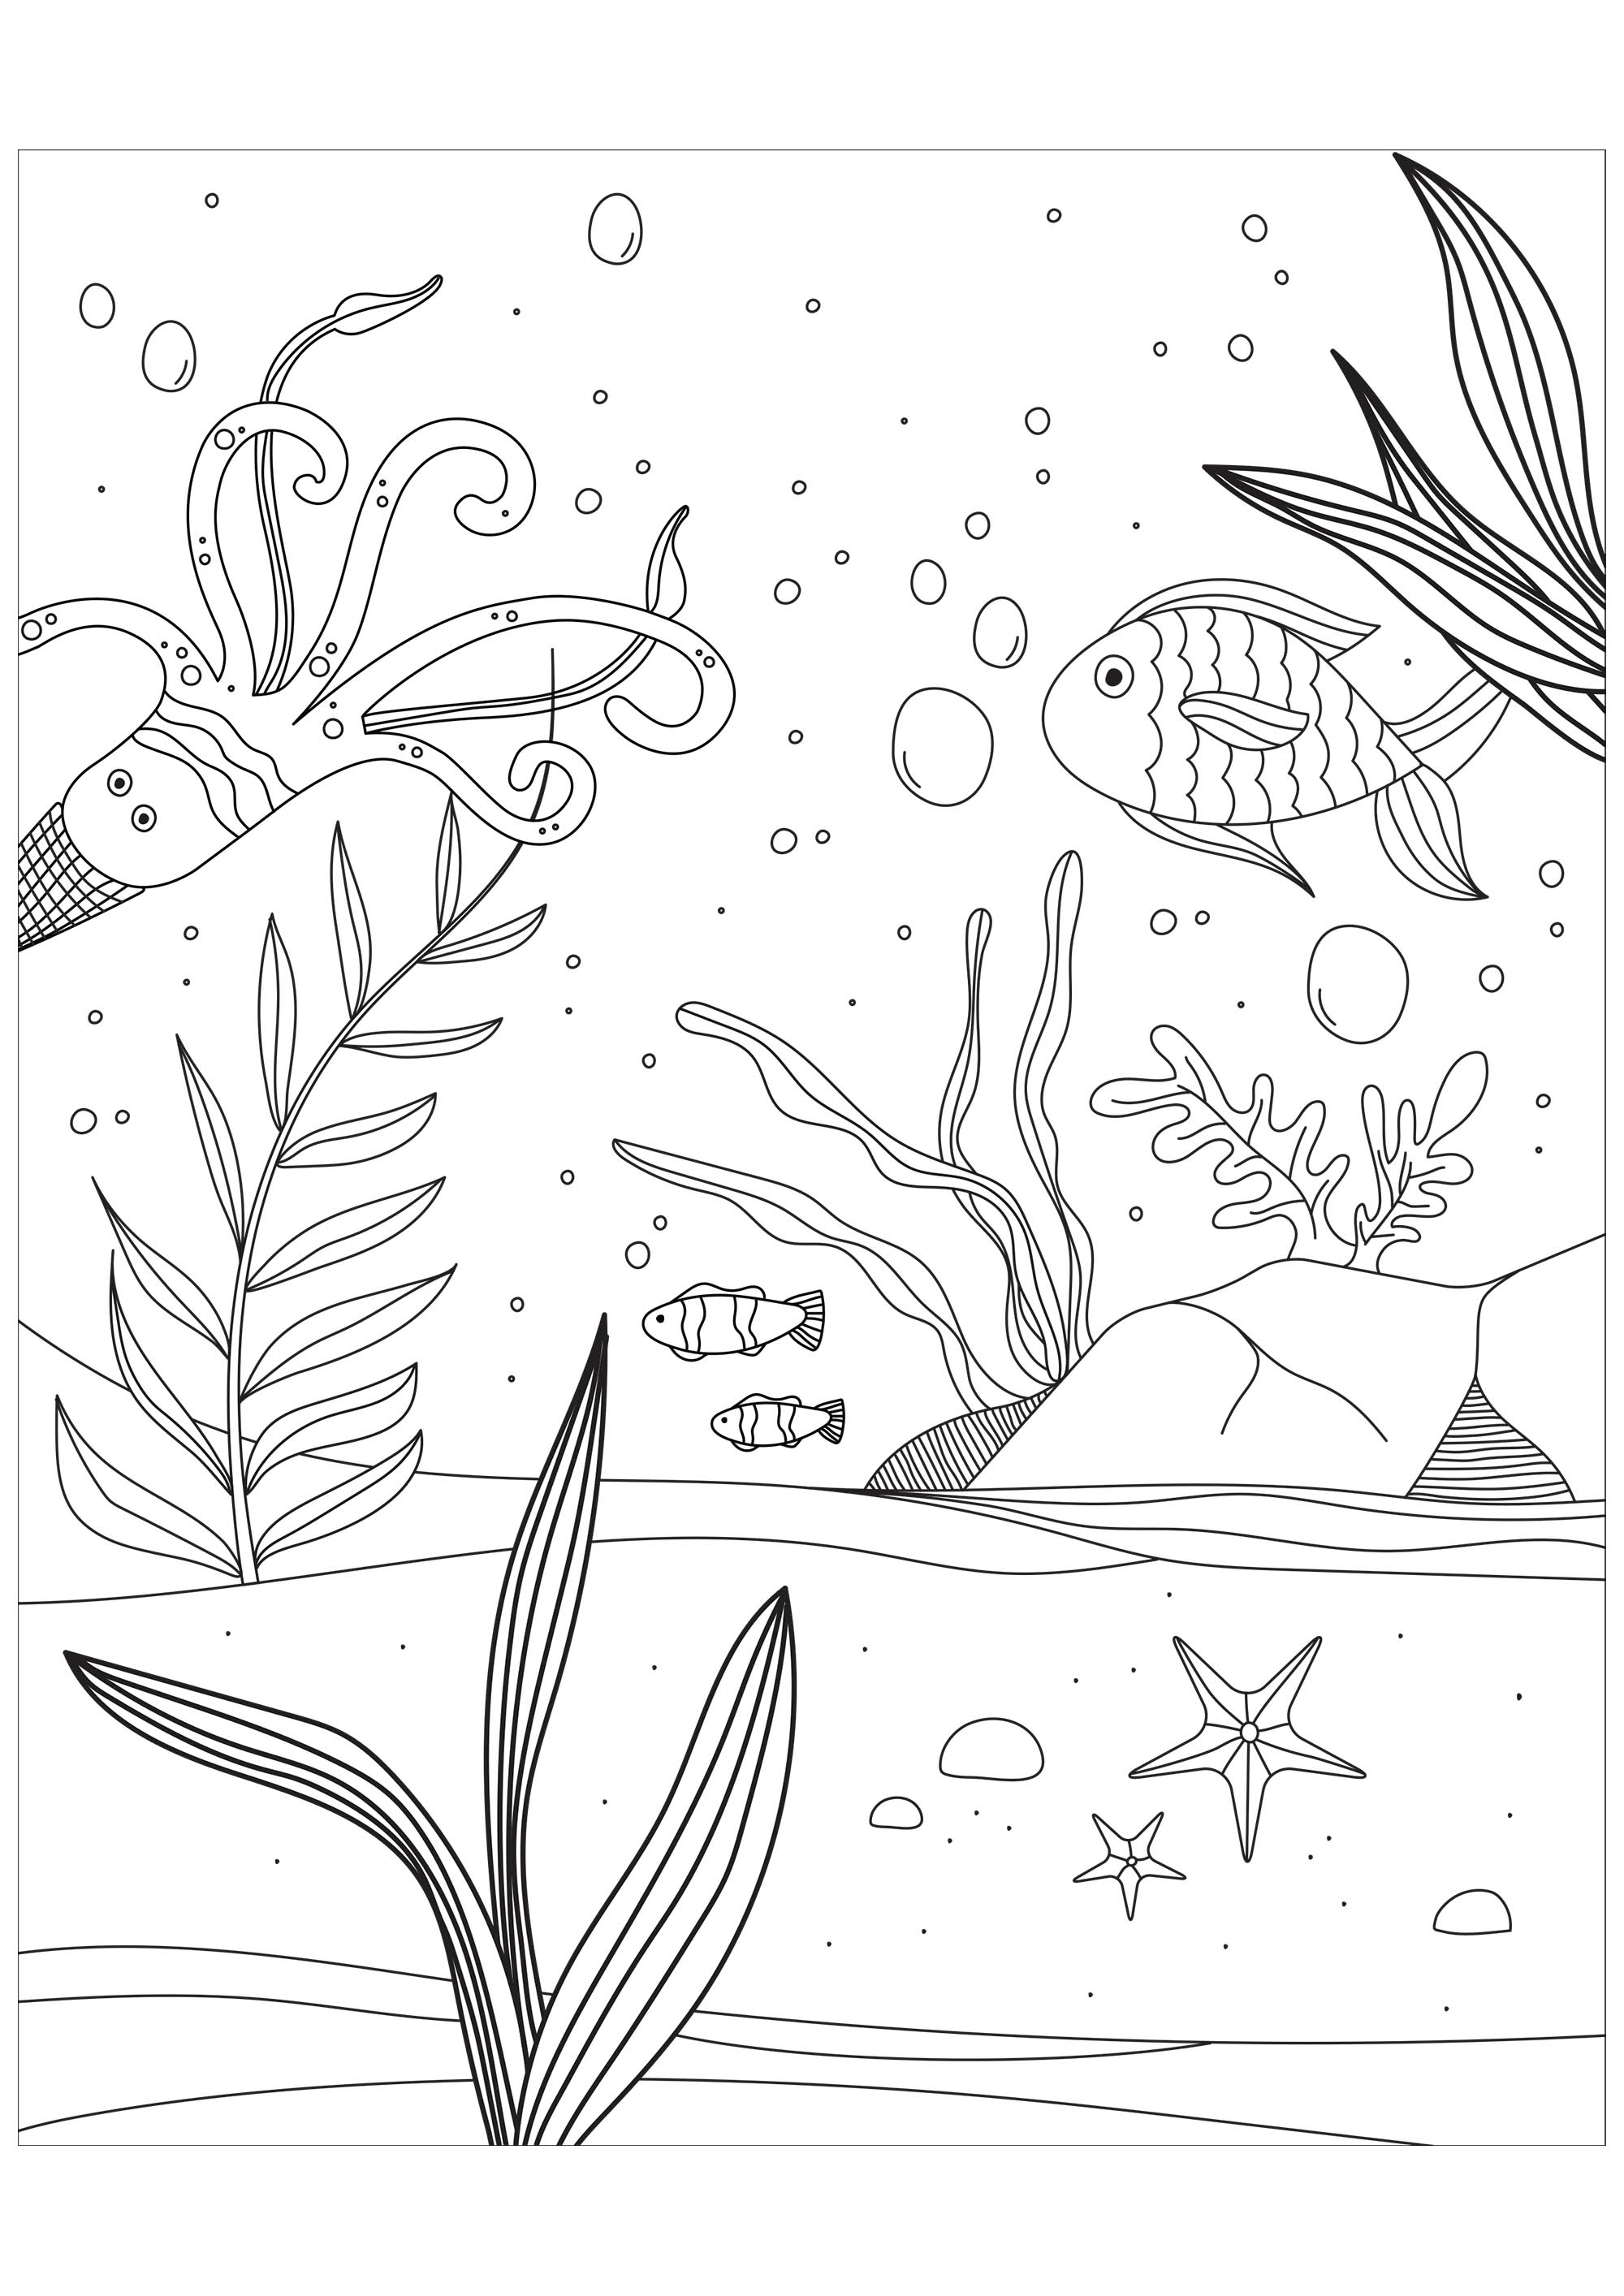 Peces, pulpos y estrellas de mar en el fondo del mar. Proporcionado por el sitio Gifts.com